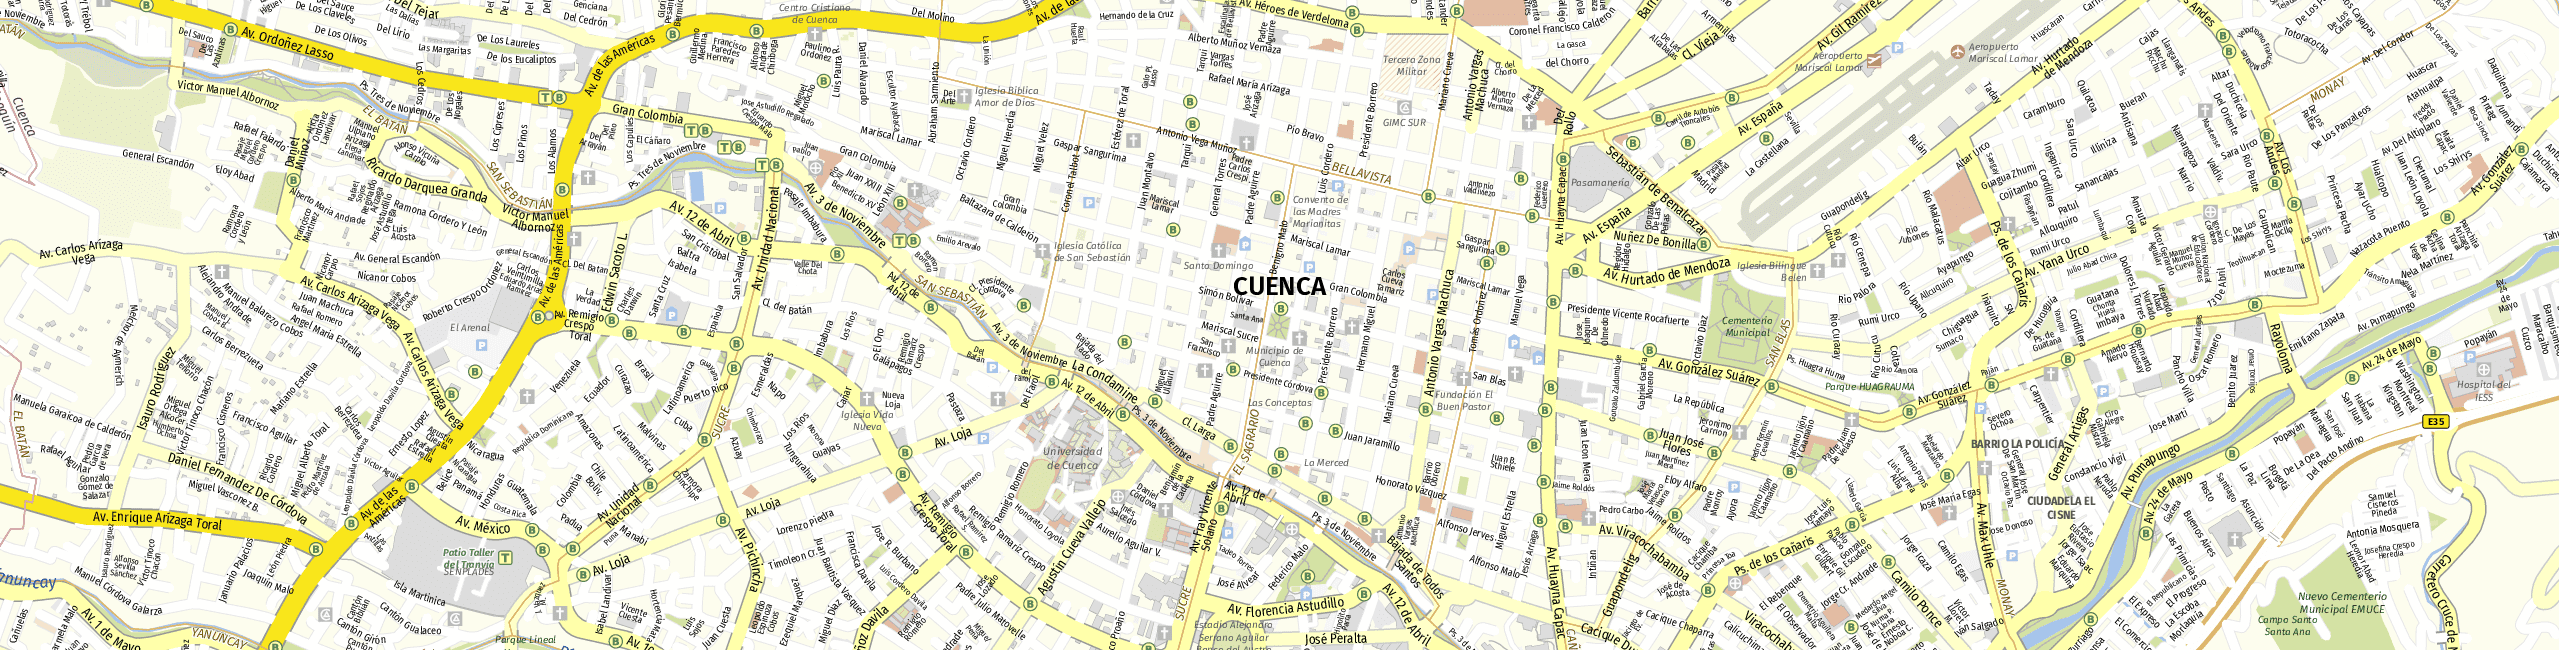 Stadtplan Cuenca zum Downloaden.